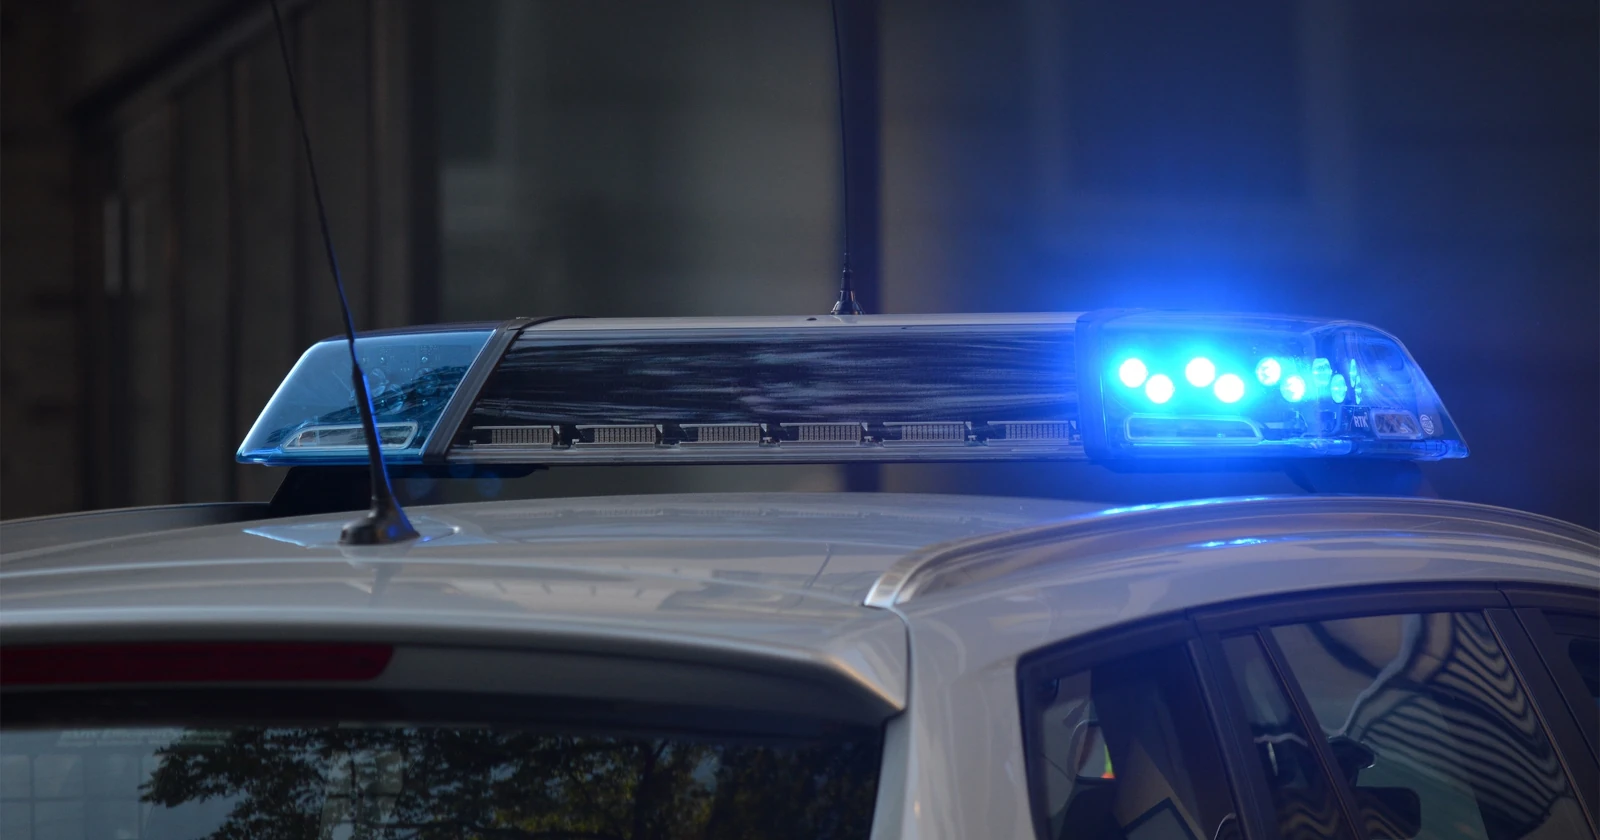 (HN) Heilbronn - Die Kriminalpolizei Heilbronn sucht die rechtm&auml;&szlig;igen Eigent&uuml;mer von mutma&szlig;lich gestohlenen Fahrr&auml;dern und Pedelecs